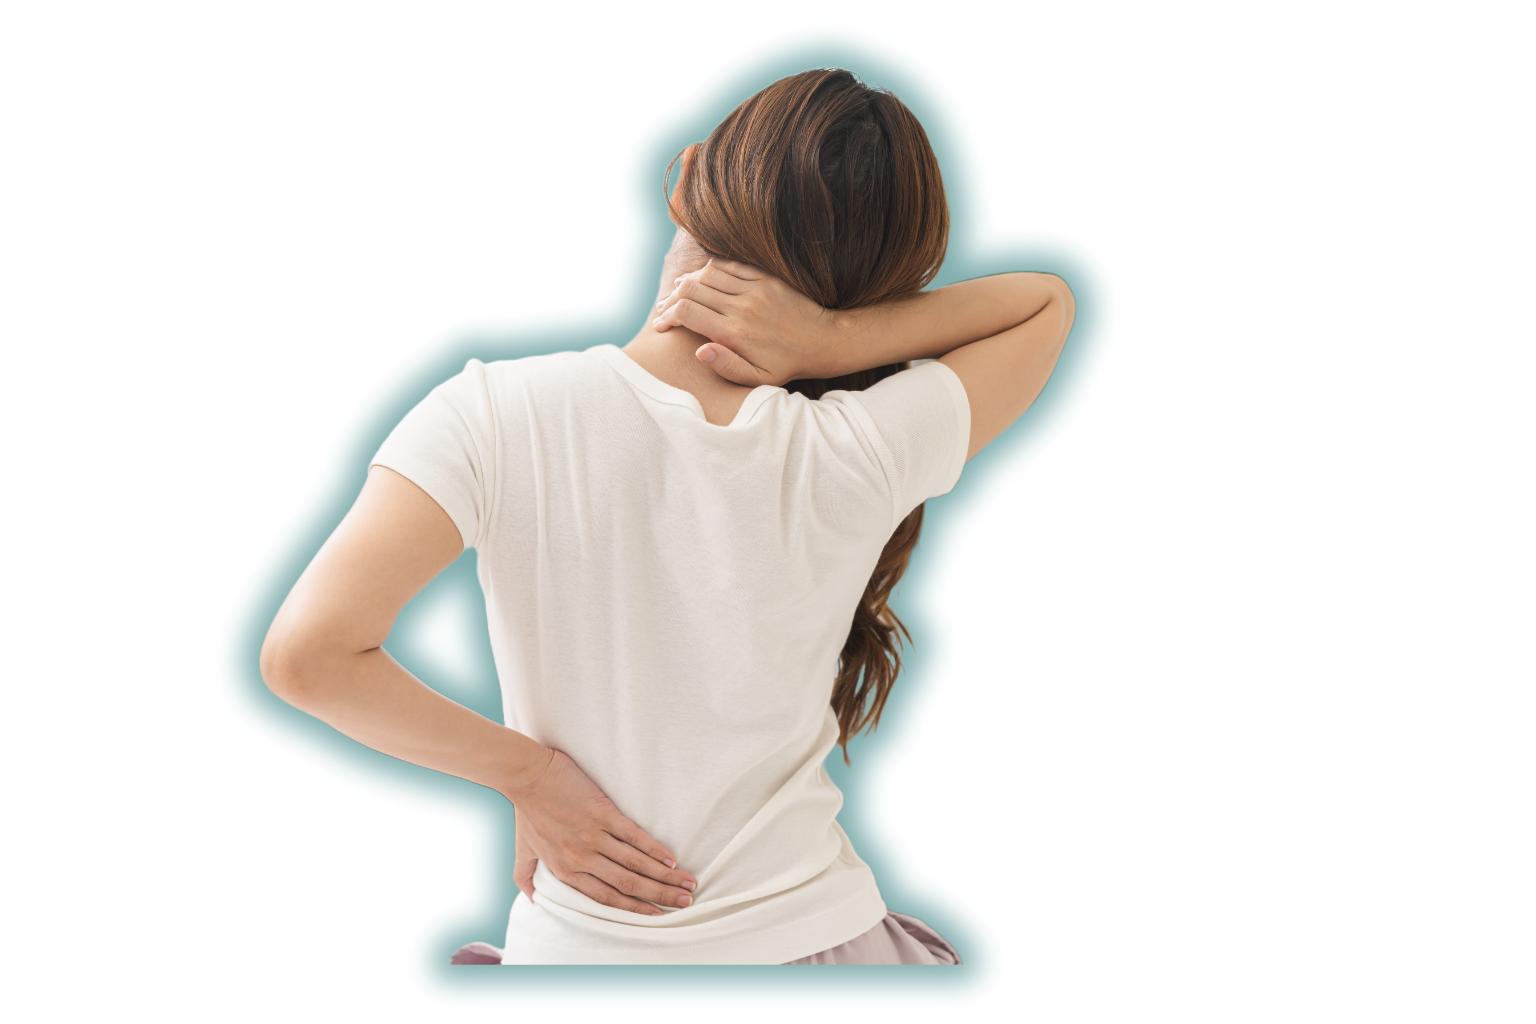 Nervenschmerzen und was dagegen hilft, Polyneuropathie können als aufgrund von Nährstoffmangel auftreten, sie manifestieren sich als Kribbeln, und Brennen vor allem in den Beinen und Händen aber auch als Rückenschmerzen, Stechender Schmerz im Rücken oder in den Extremitäten. gegen stechenden Schmerz beste Nahrungsergänzungsmittel.